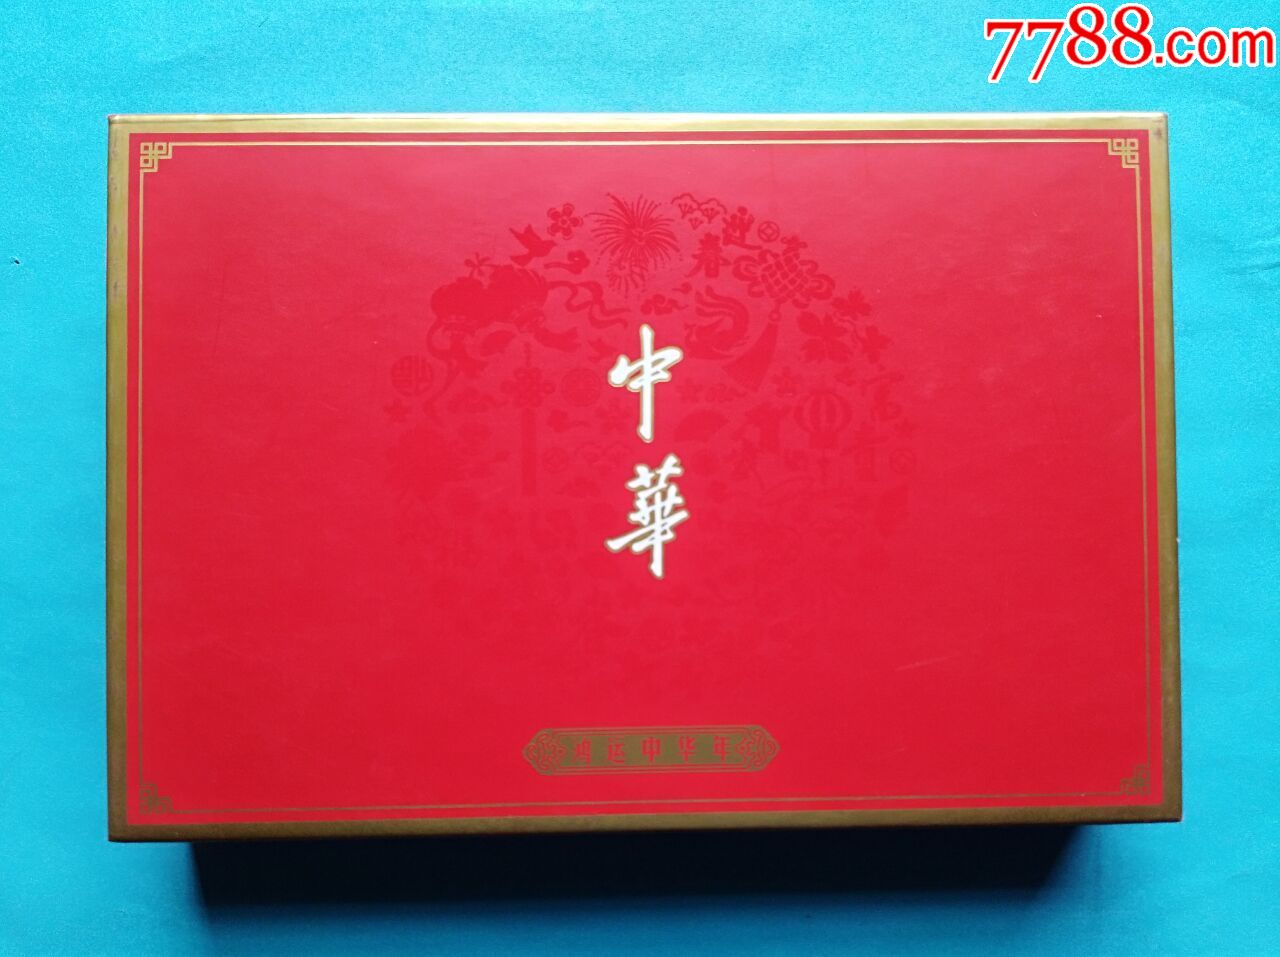 中华烟礼盒礼品盒图片